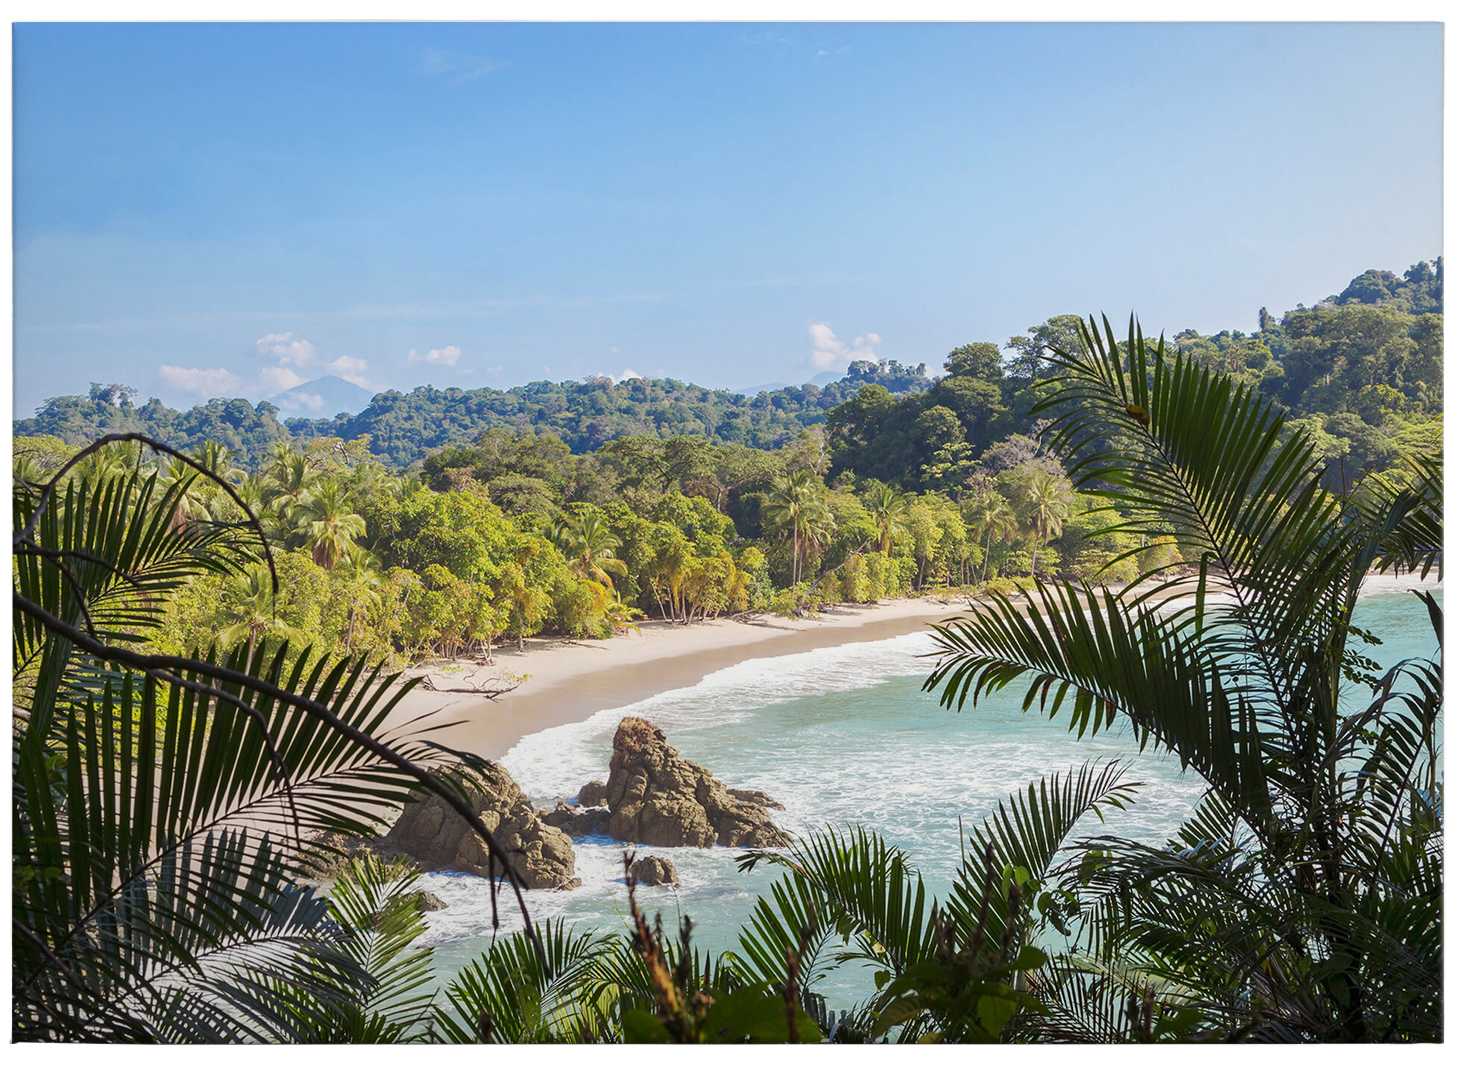             Canvas print Costa Rica Coast, jungel picture
        